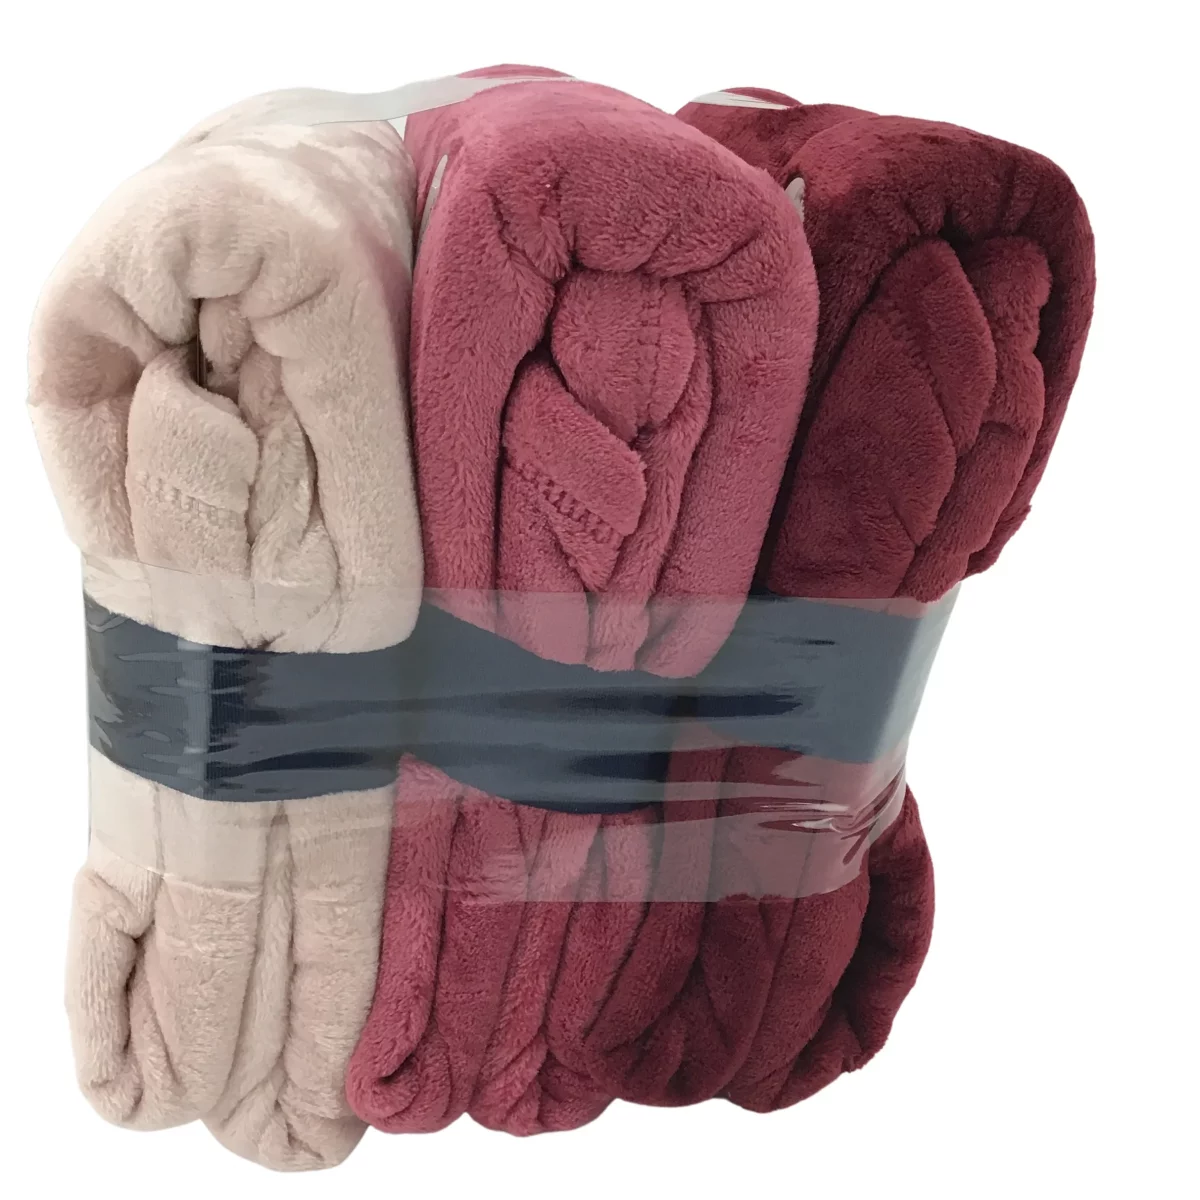 Berkshire: Velvet Soft Throw Blanket / 3 pack / Throw Blanket Set / Pink /Burgundy